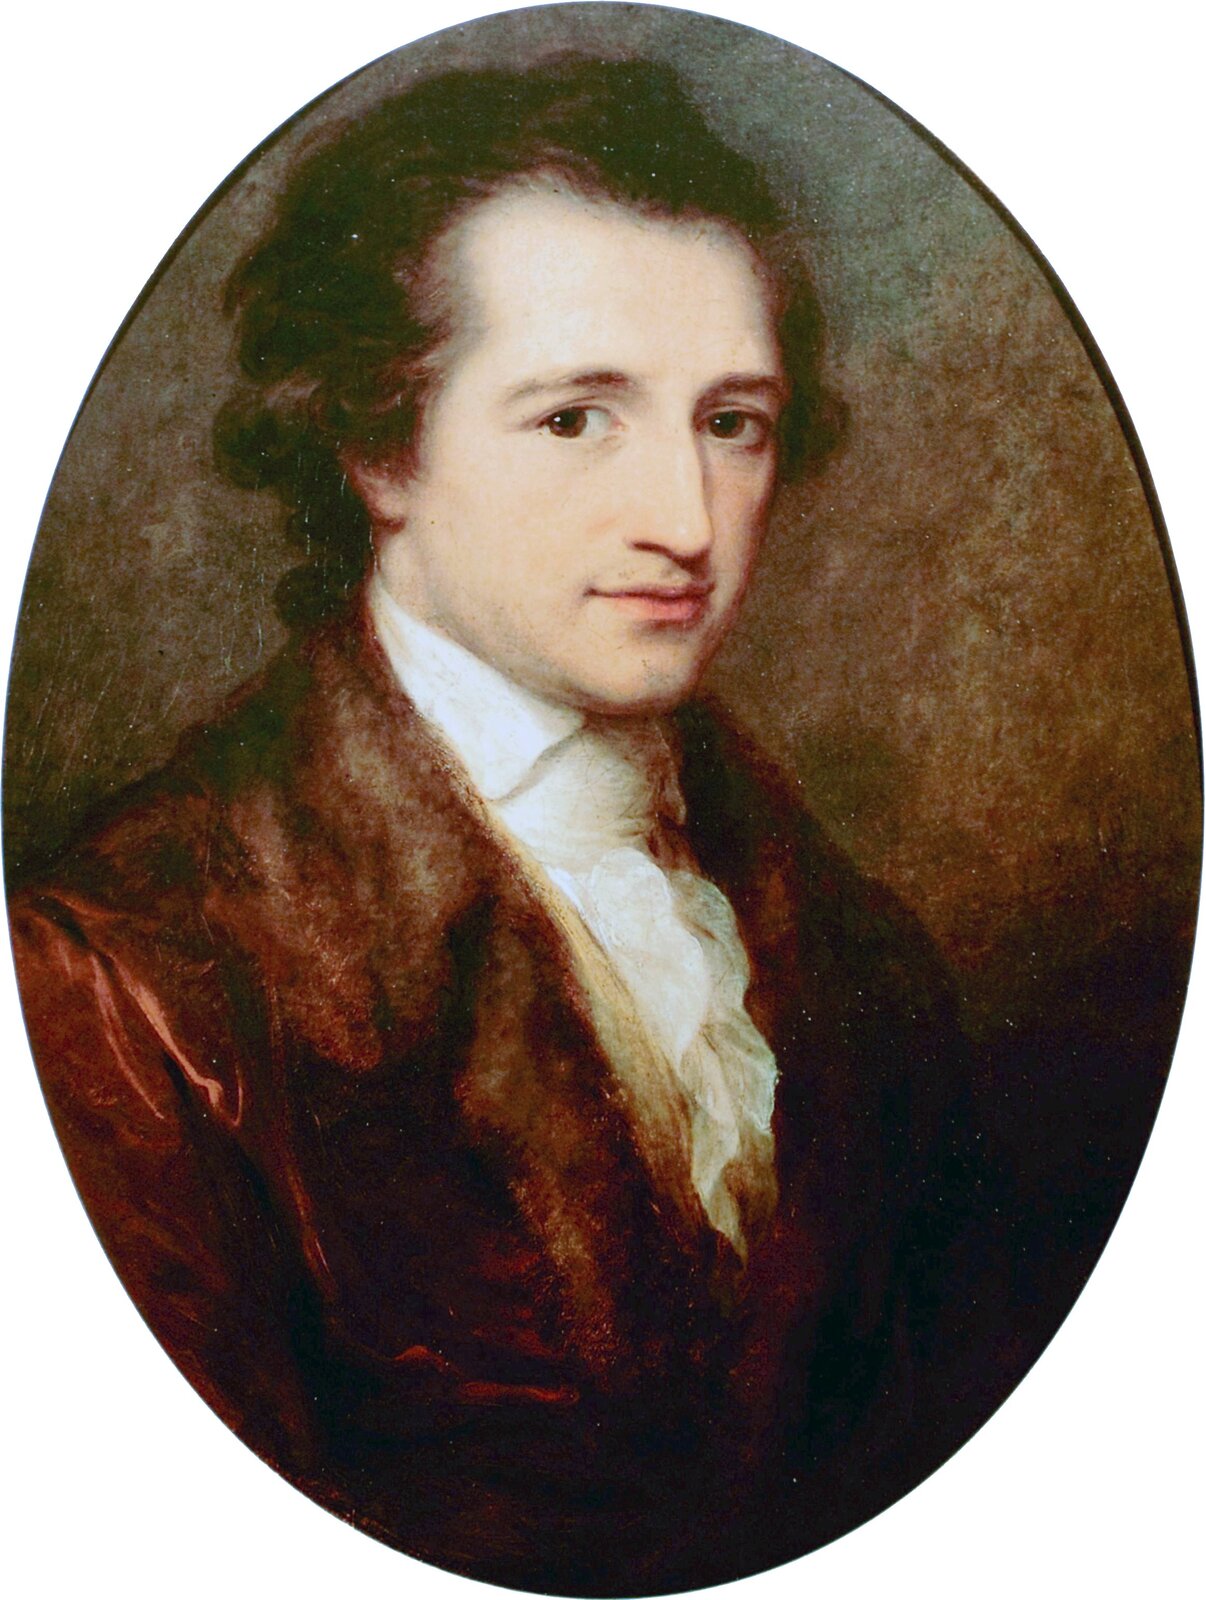 Młody Johann Wolfgang Goethe Źródło: Angelica Kauffman, Młody Johann Wolfgang Goethe, 1787, olej na płótnie, Goethe-Nationalmuseum (Weimar), domena publiczna.